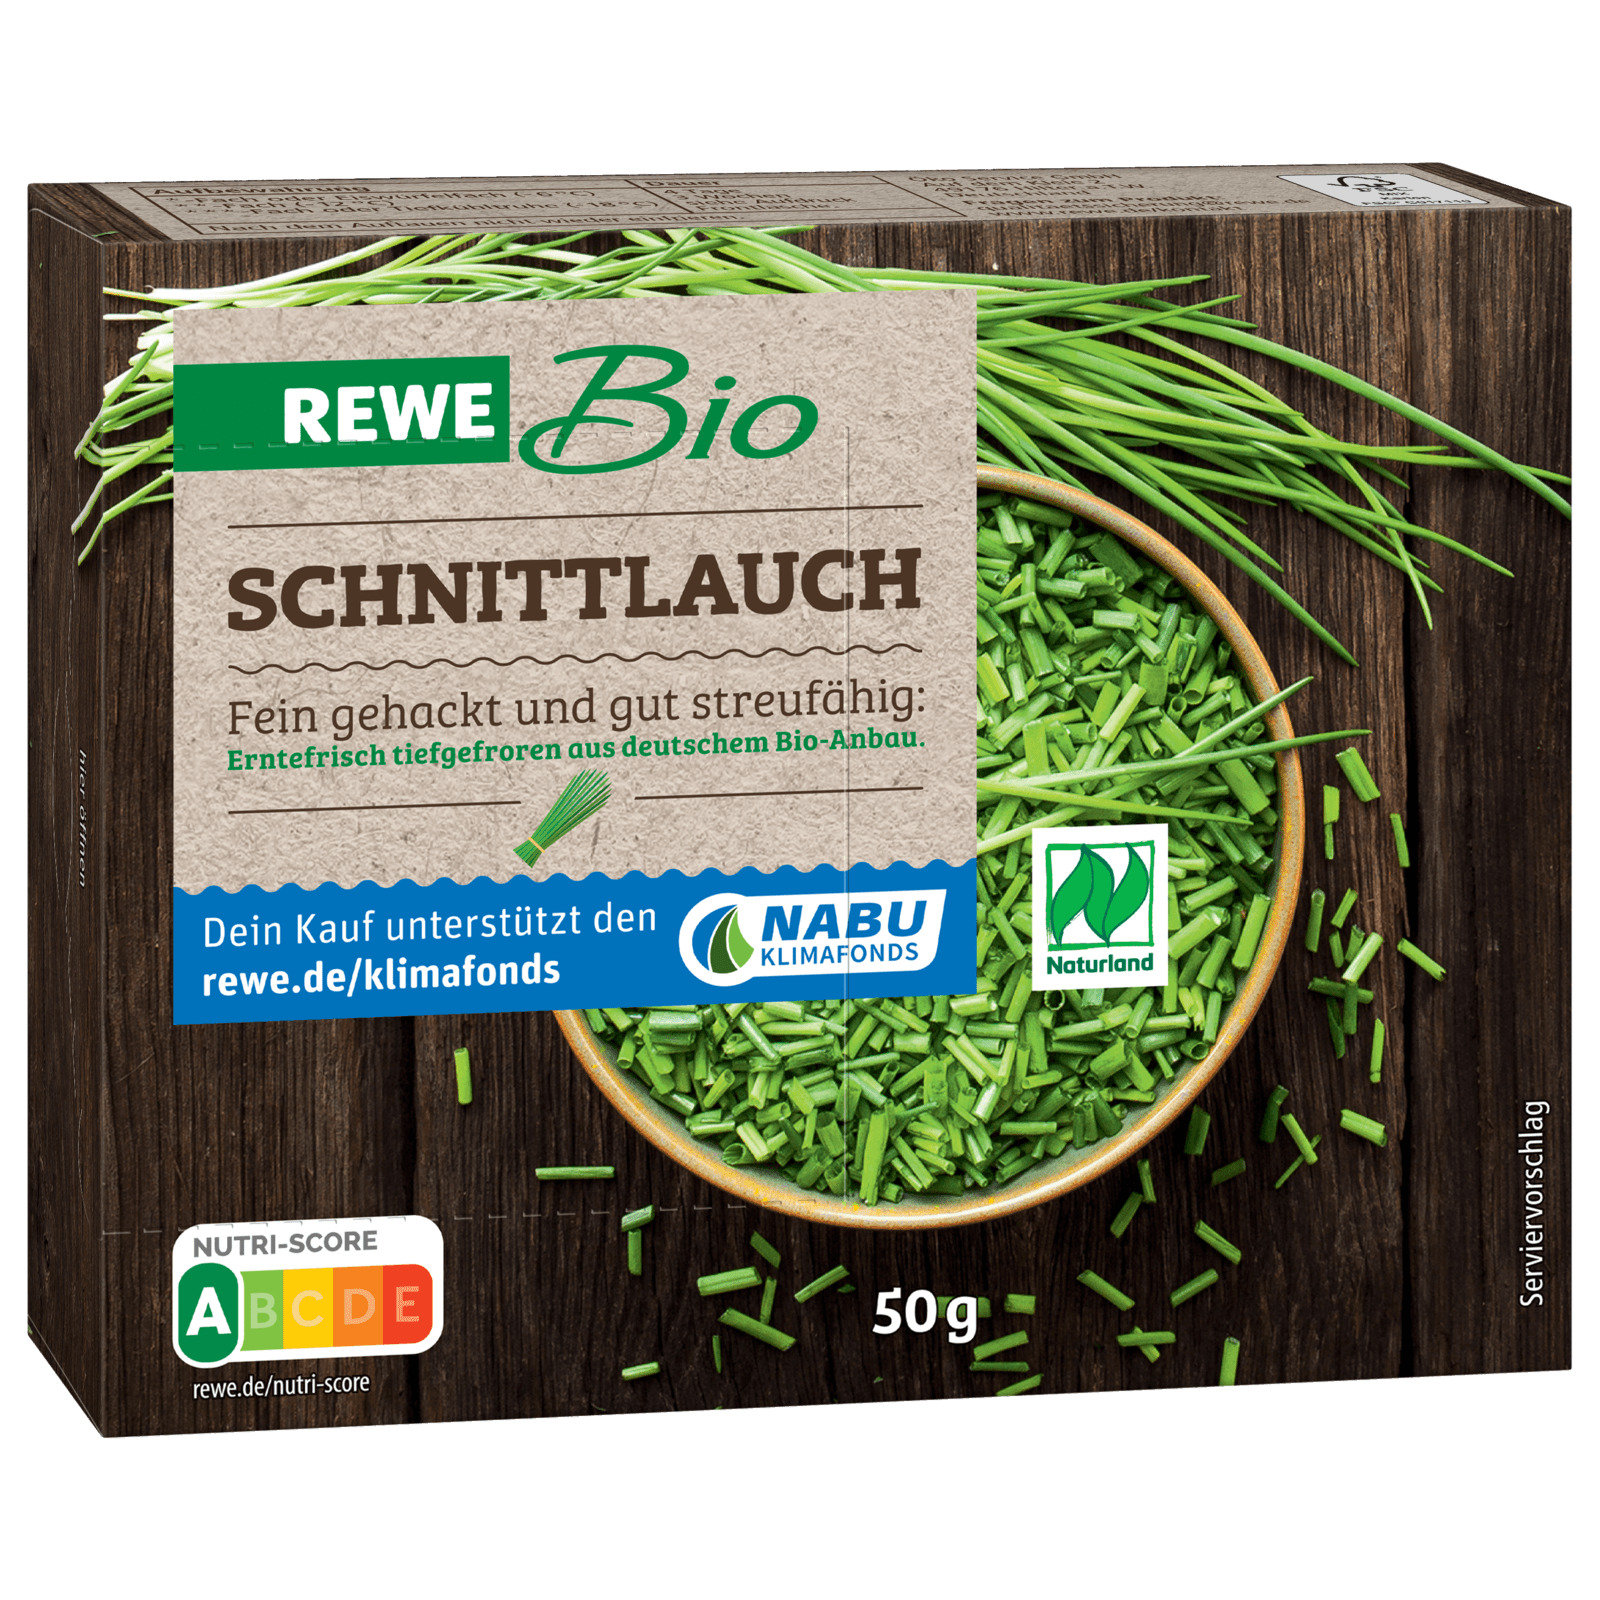 REWE Bio Schnittlauch 50g